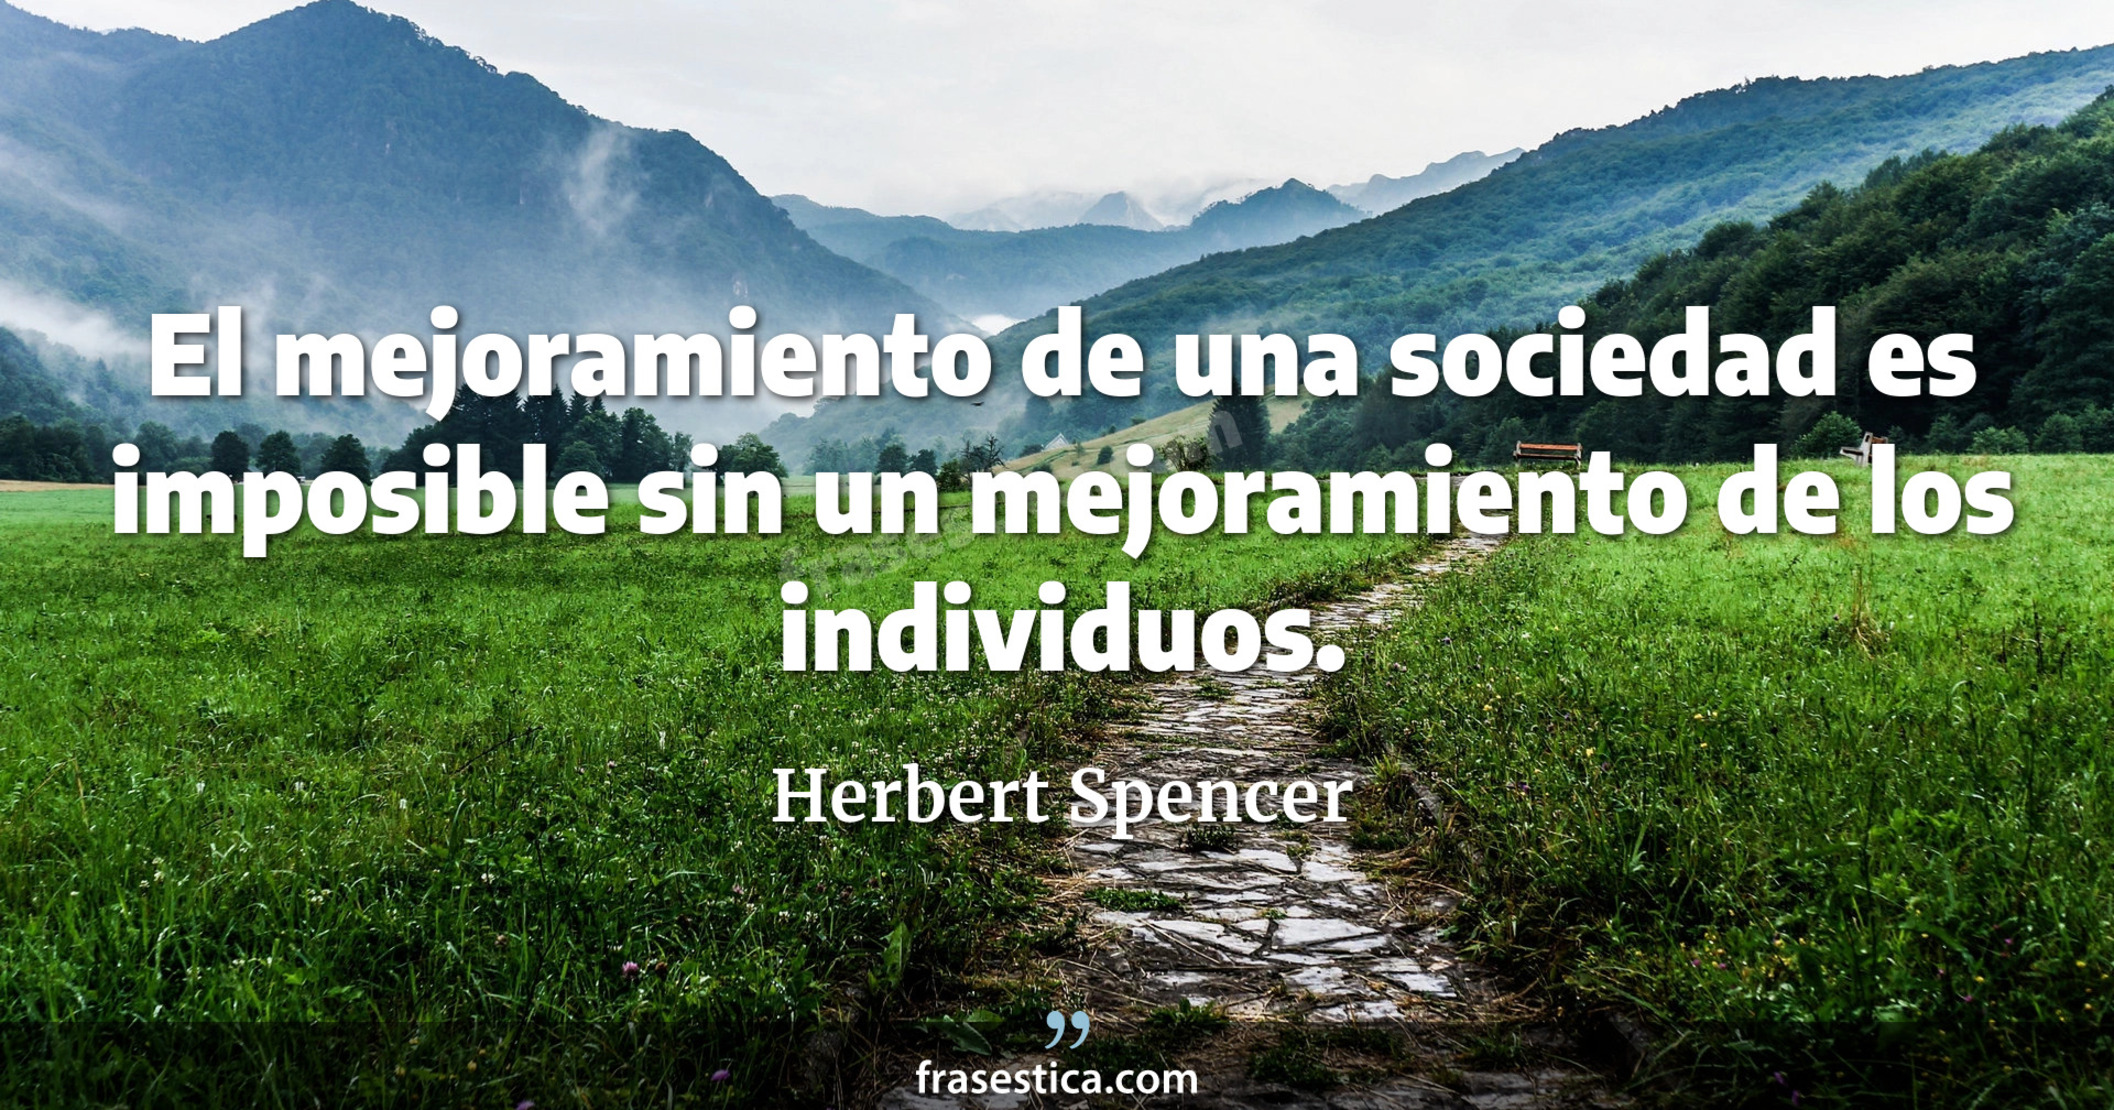 El mejoramiento de una sociedad es imposible sin un mejoramiento de los individuos. - Herbert Spencer